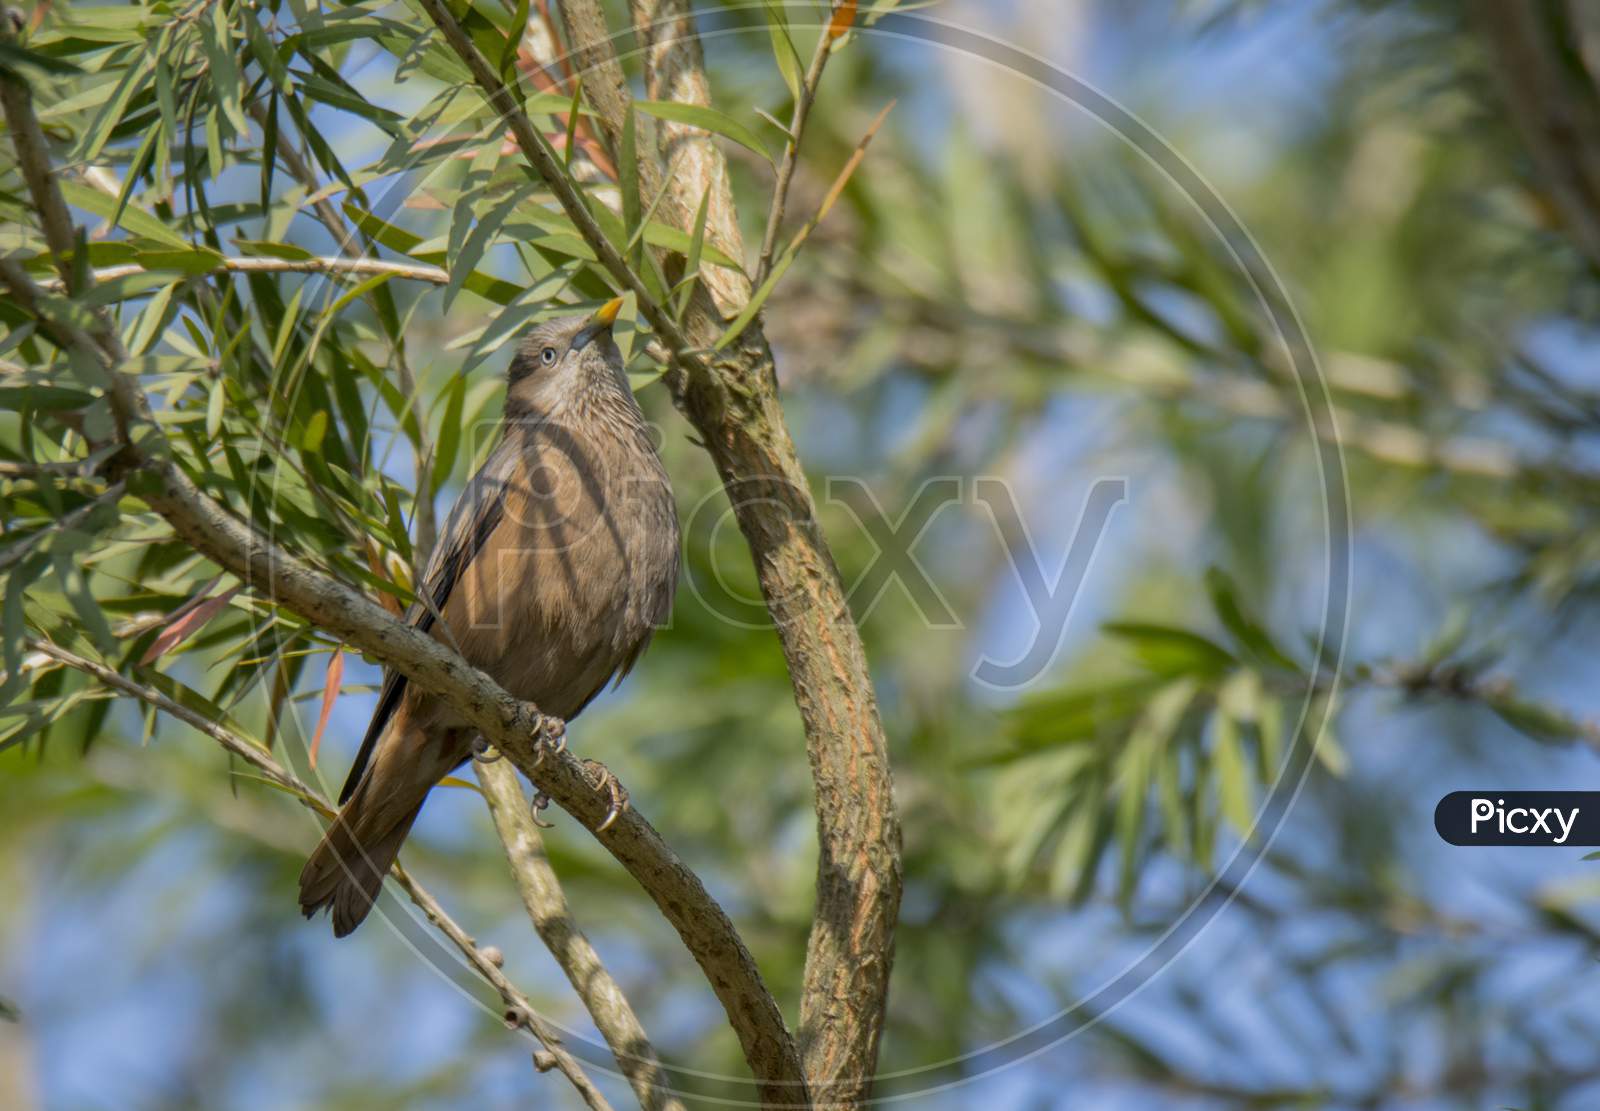 A Wild Bird On Tree Branch At Morning Light .